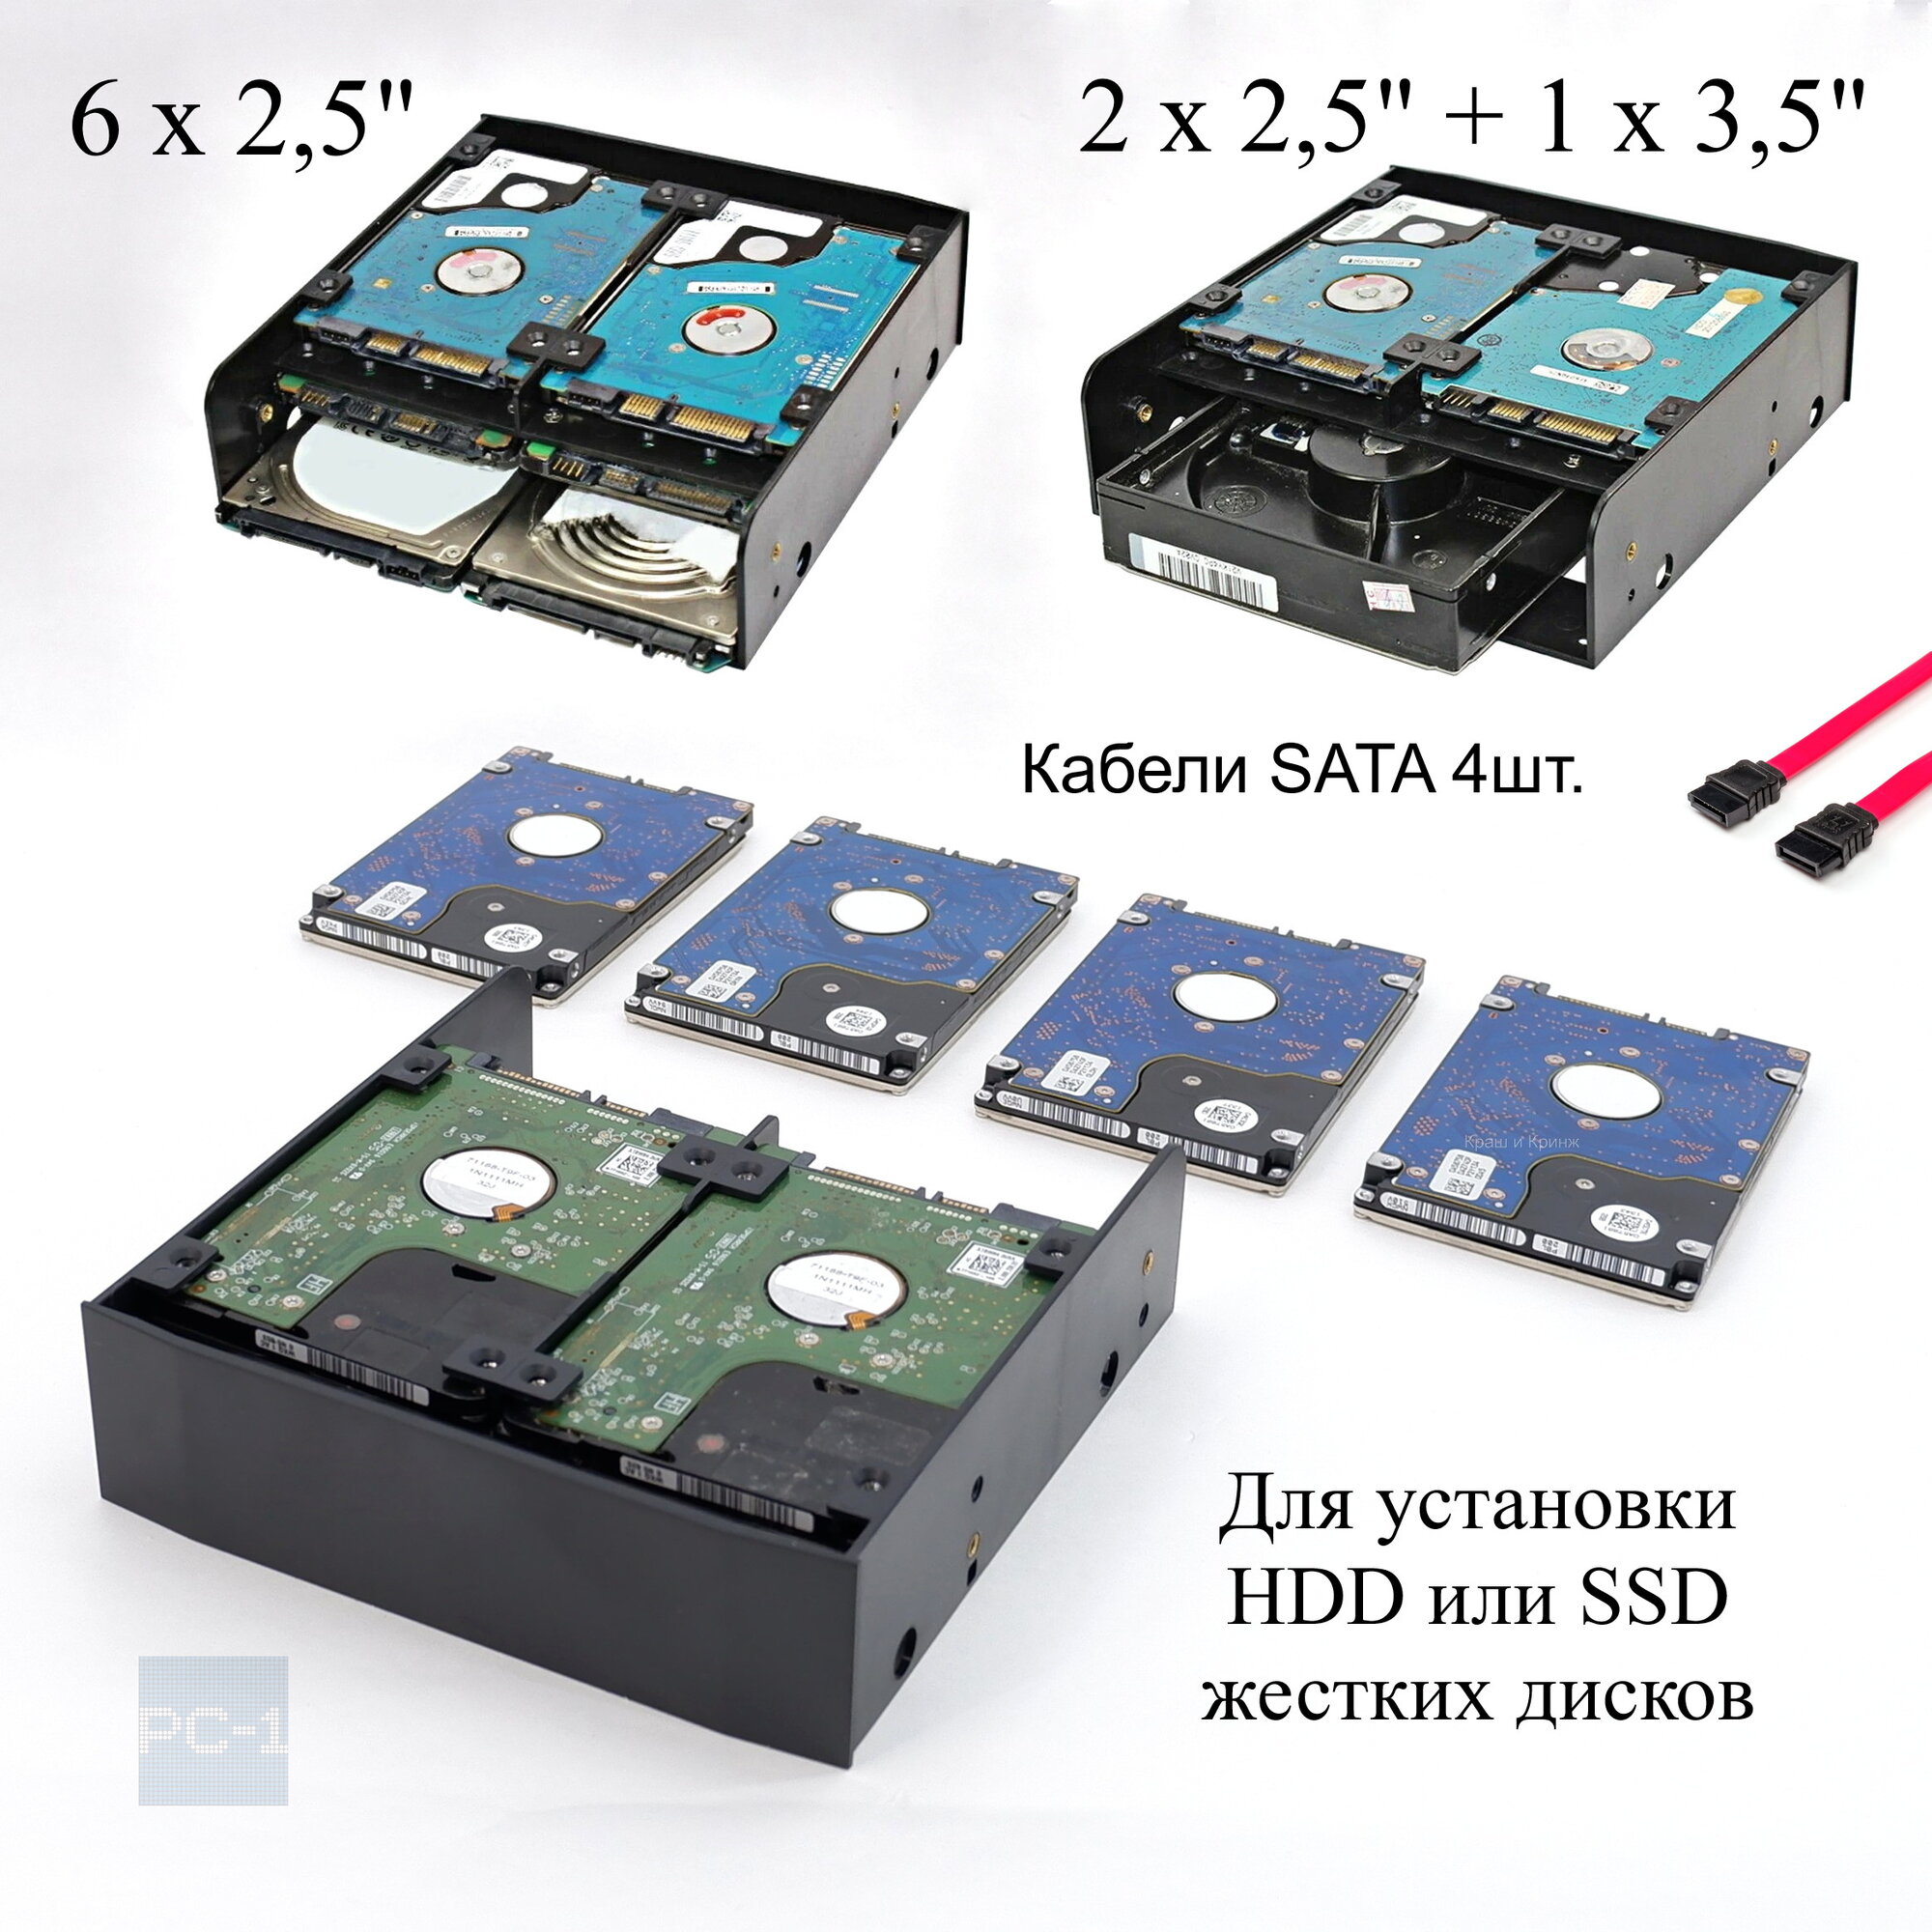 Кронштейн съемный Корзина в корпус ПК для крепления 6 штук HDD или SSD жестких дисков 2.5 Шасси в отсек 5.25 дюйма + 4 SATA кабеля.